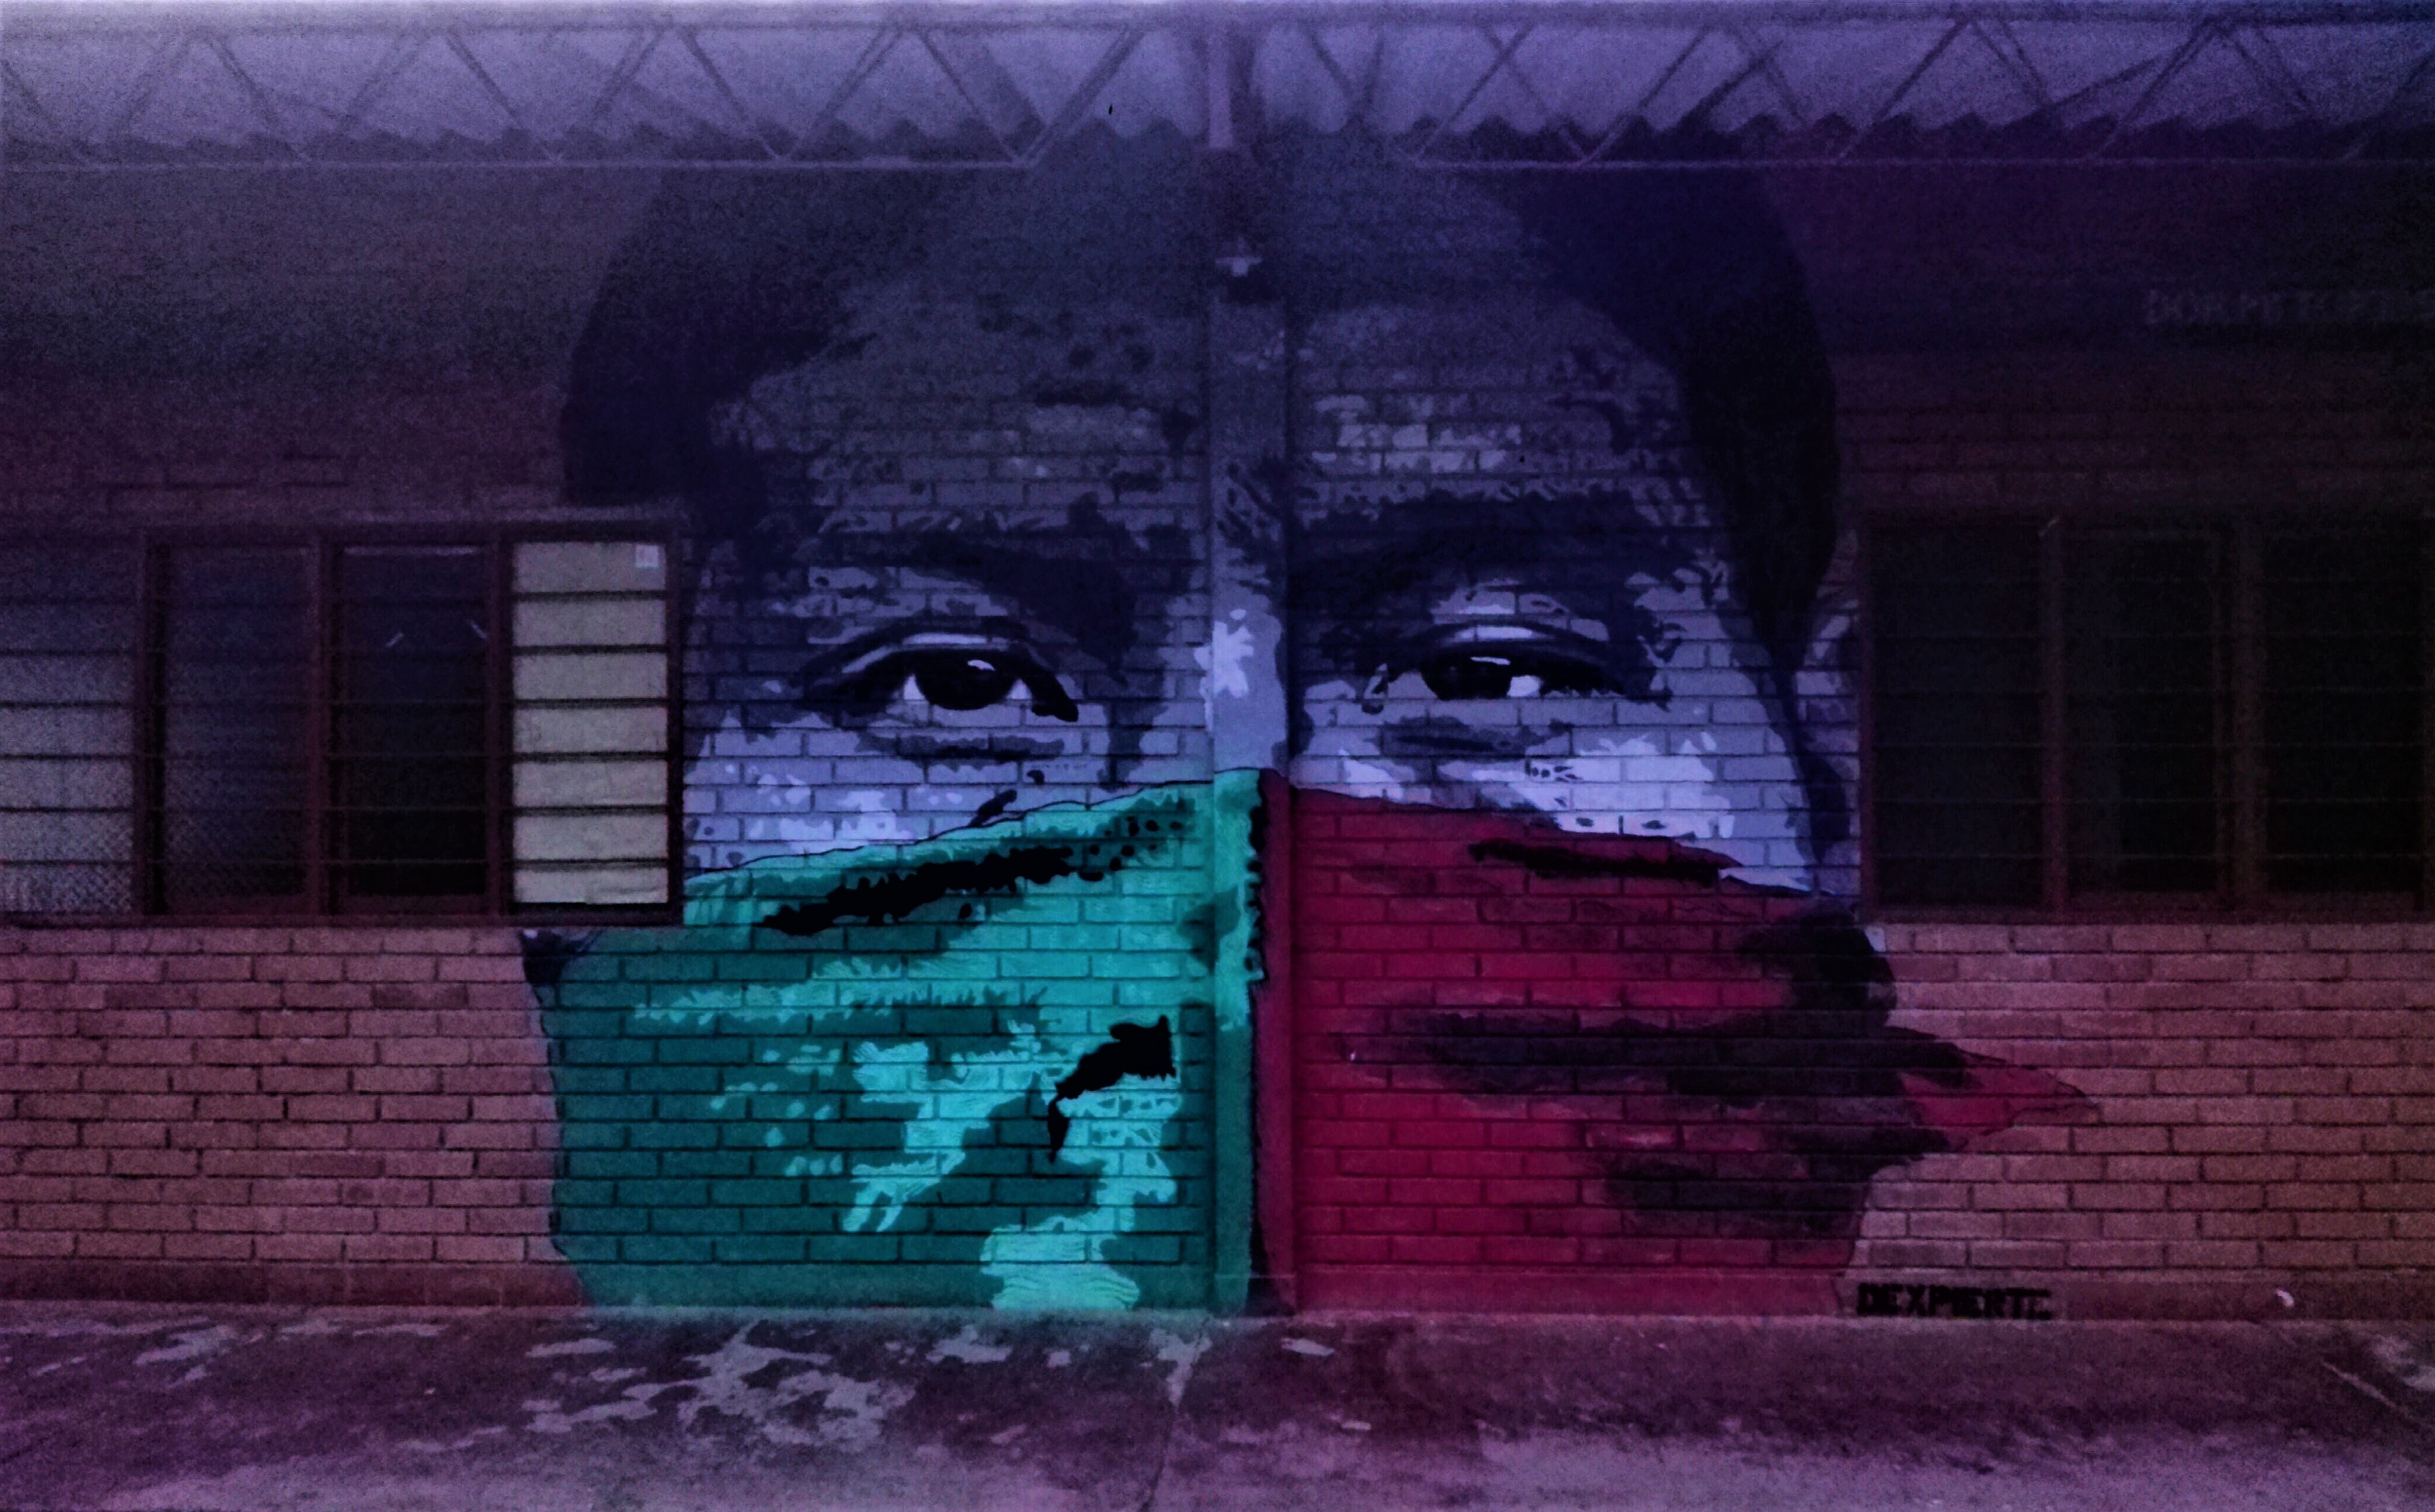 Mural di un indigeno Nasa con il viso coperto dall'immancabile fazzoletto rosso e verde, i colori simbolo della resistenza Nasa e dell'organizzazione di riferimento, il Consiglio Regionale Indigeno del Cauca - CRIC